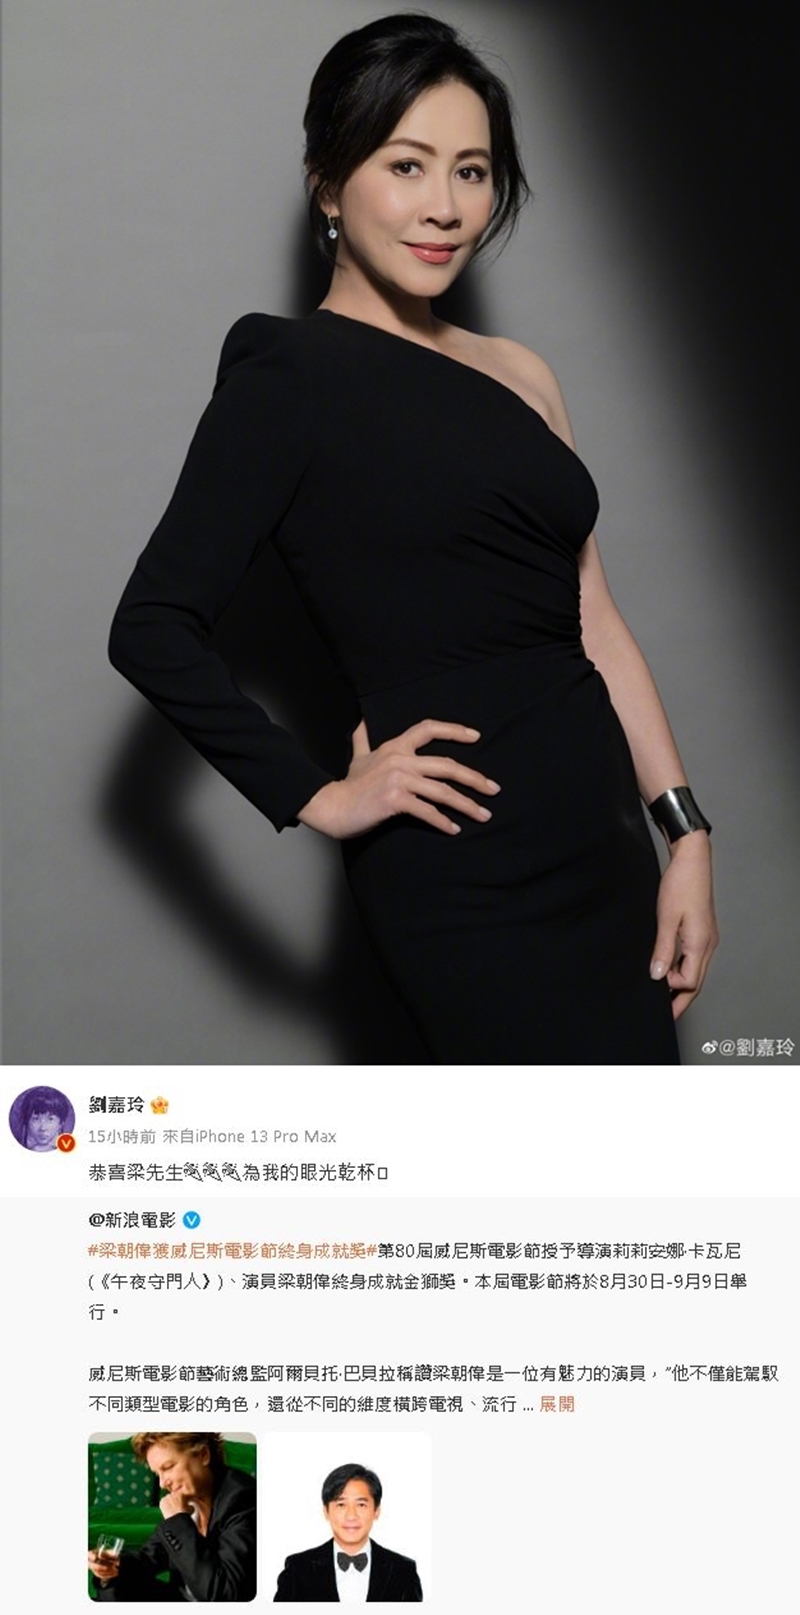 身兼其經紀人的演員妻子劉嘉玲，當晚在微博轉發喜訊並祝賀